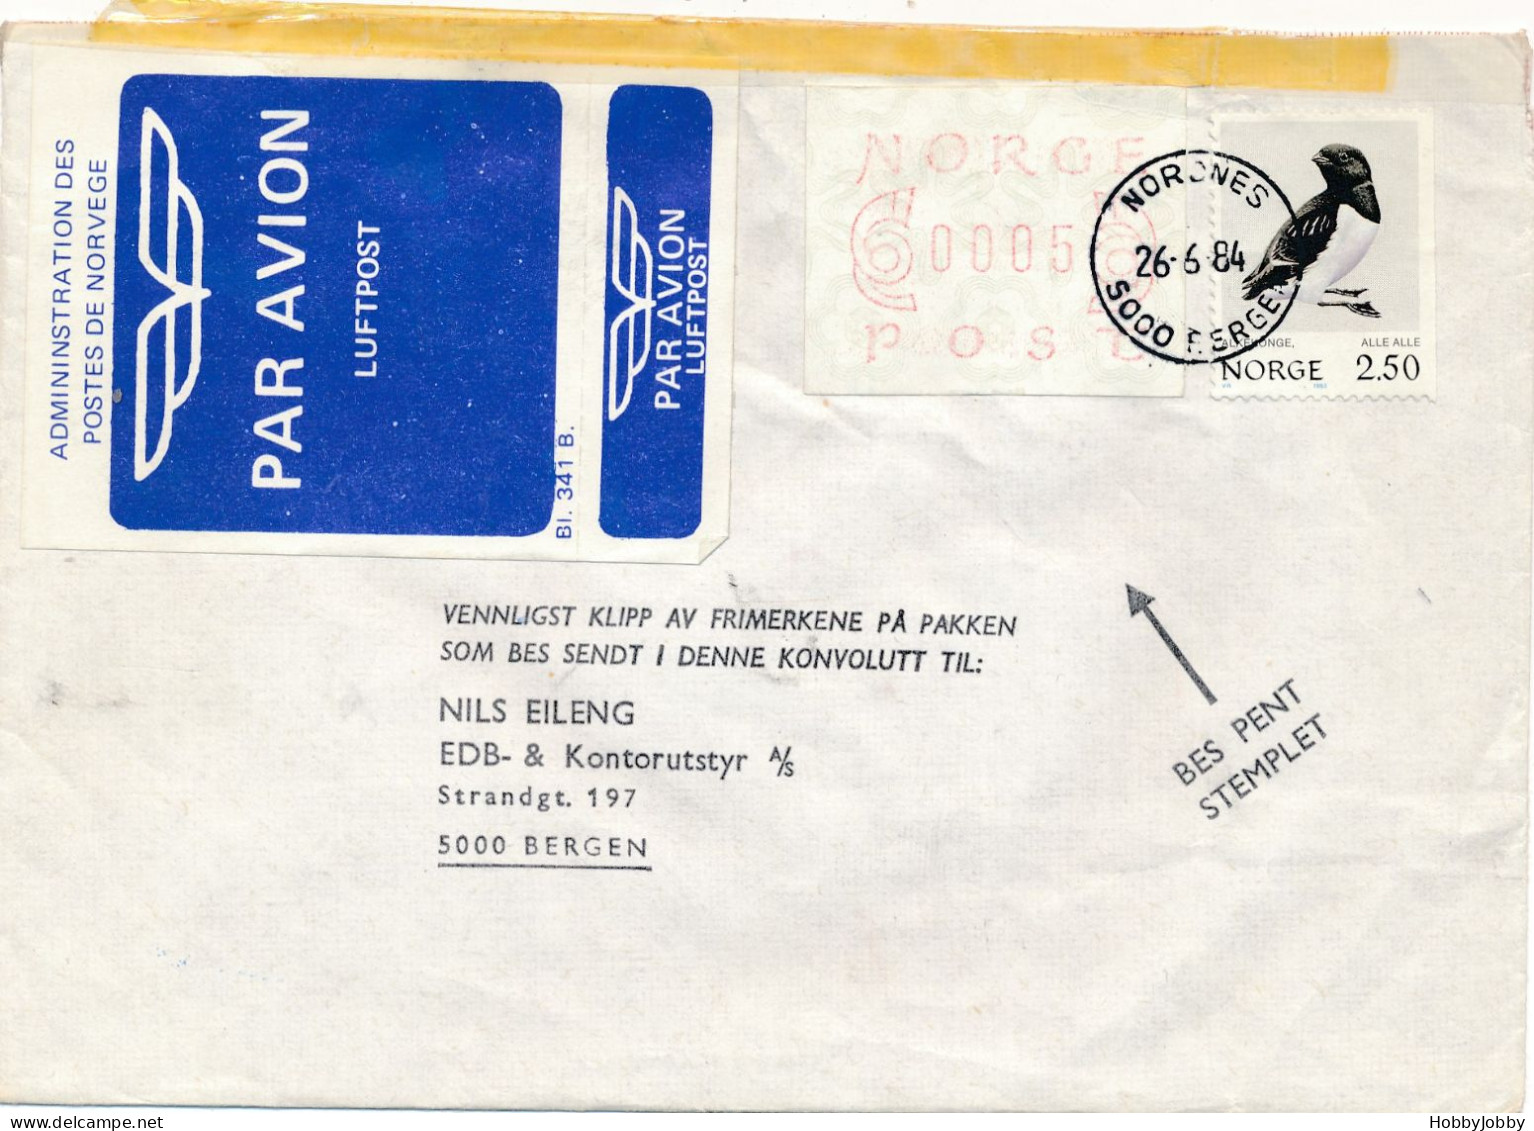 16 (!) Echt gelaufend Briefe: 1,2,3,4, & 5: 1.Desember 1980 LDC + Der erste Framalabel Norwegens + 5 ditto serie 2 FDC